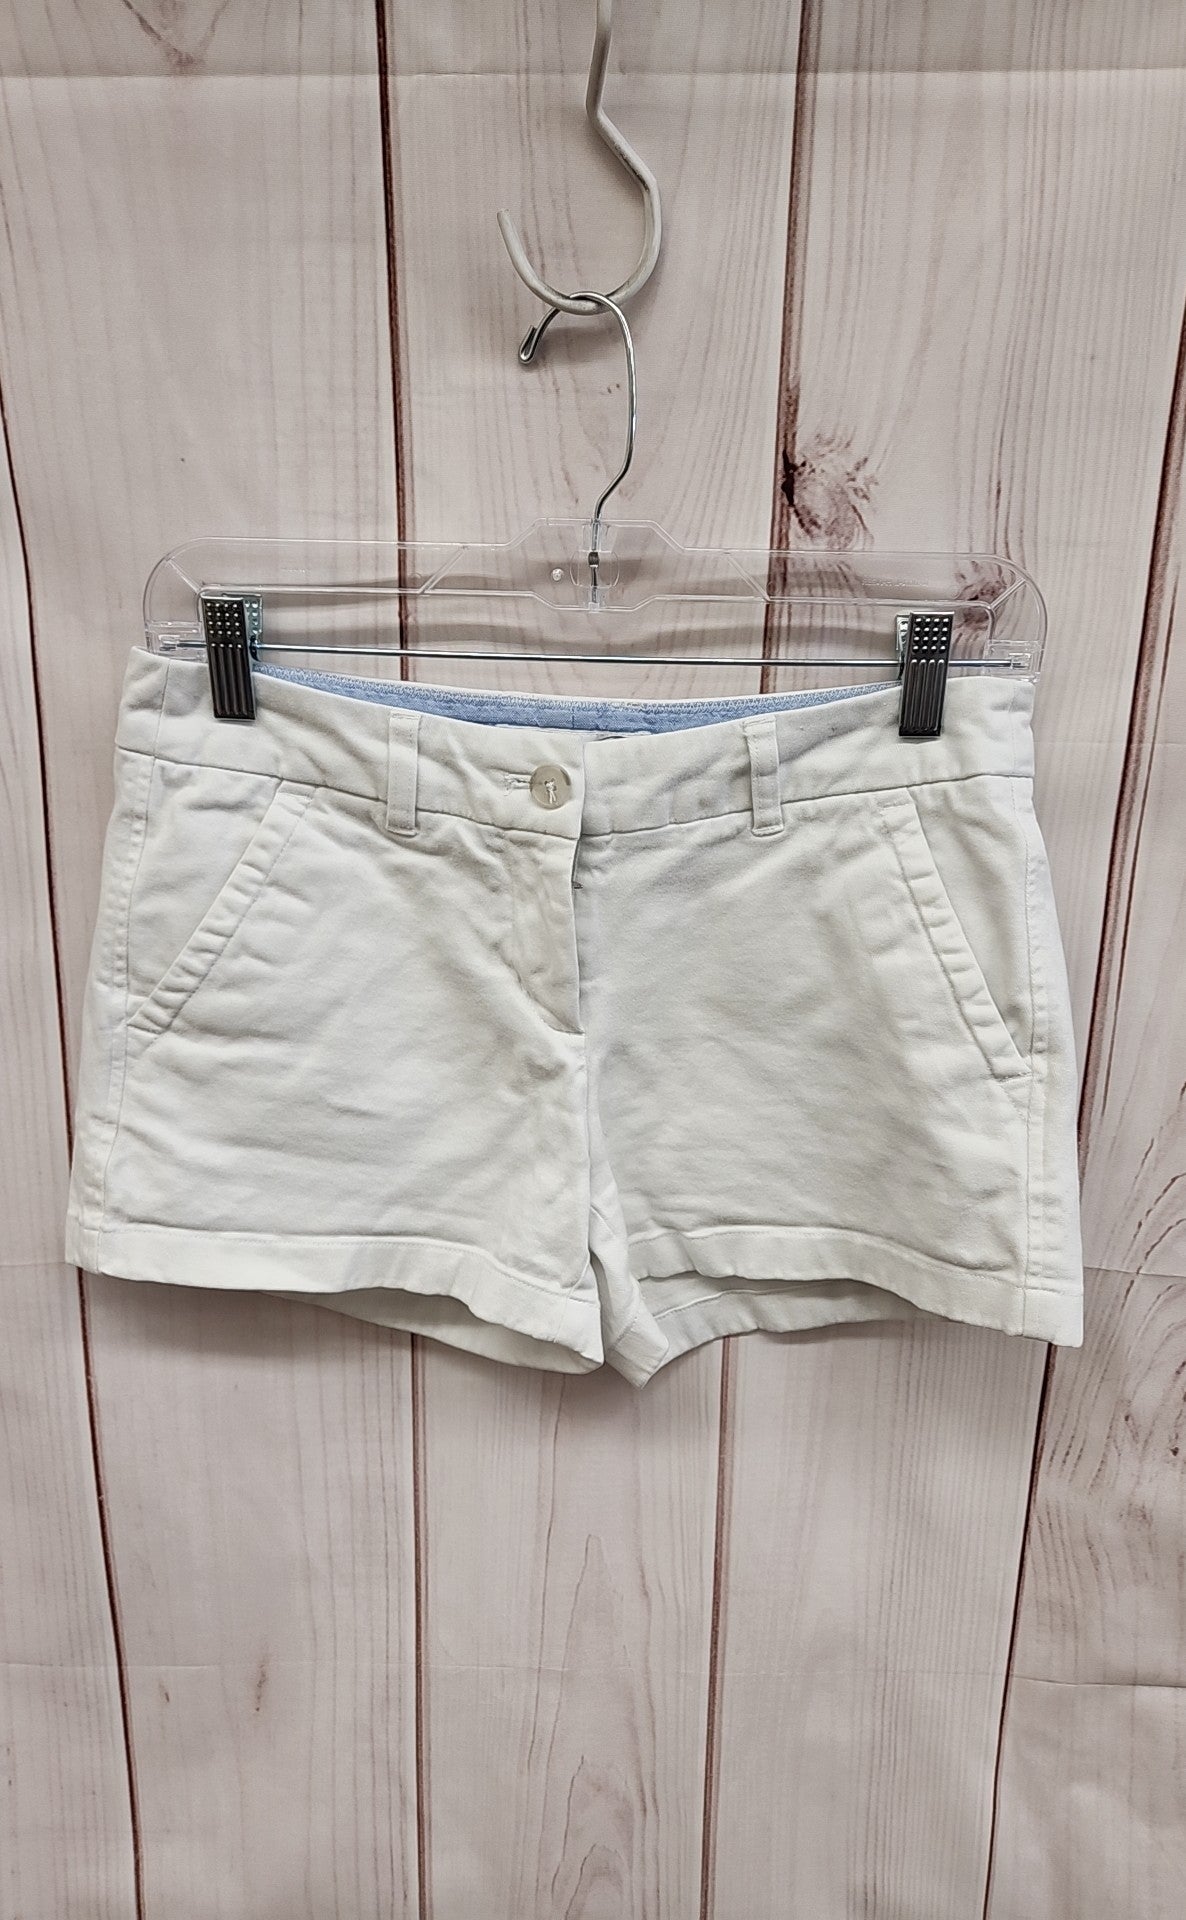 Southern Tide Women's Size 0 White Shorts